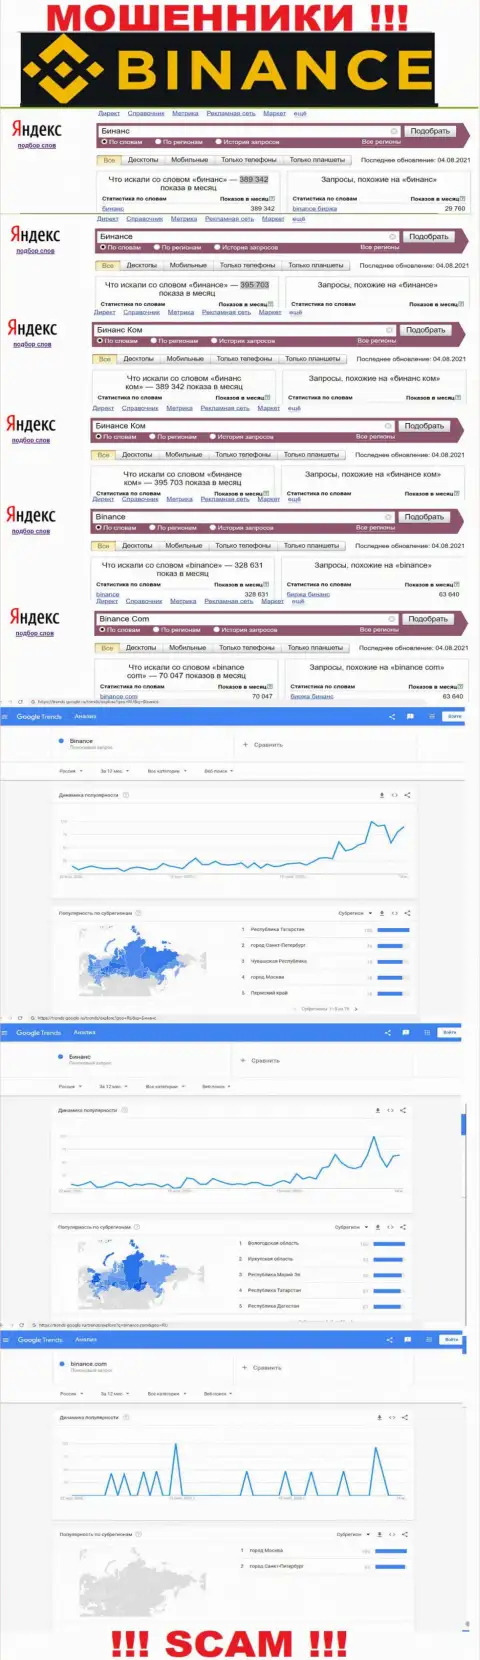 Статистические данные о запросах в поисковиках internet сети данных о конторе Бинанс